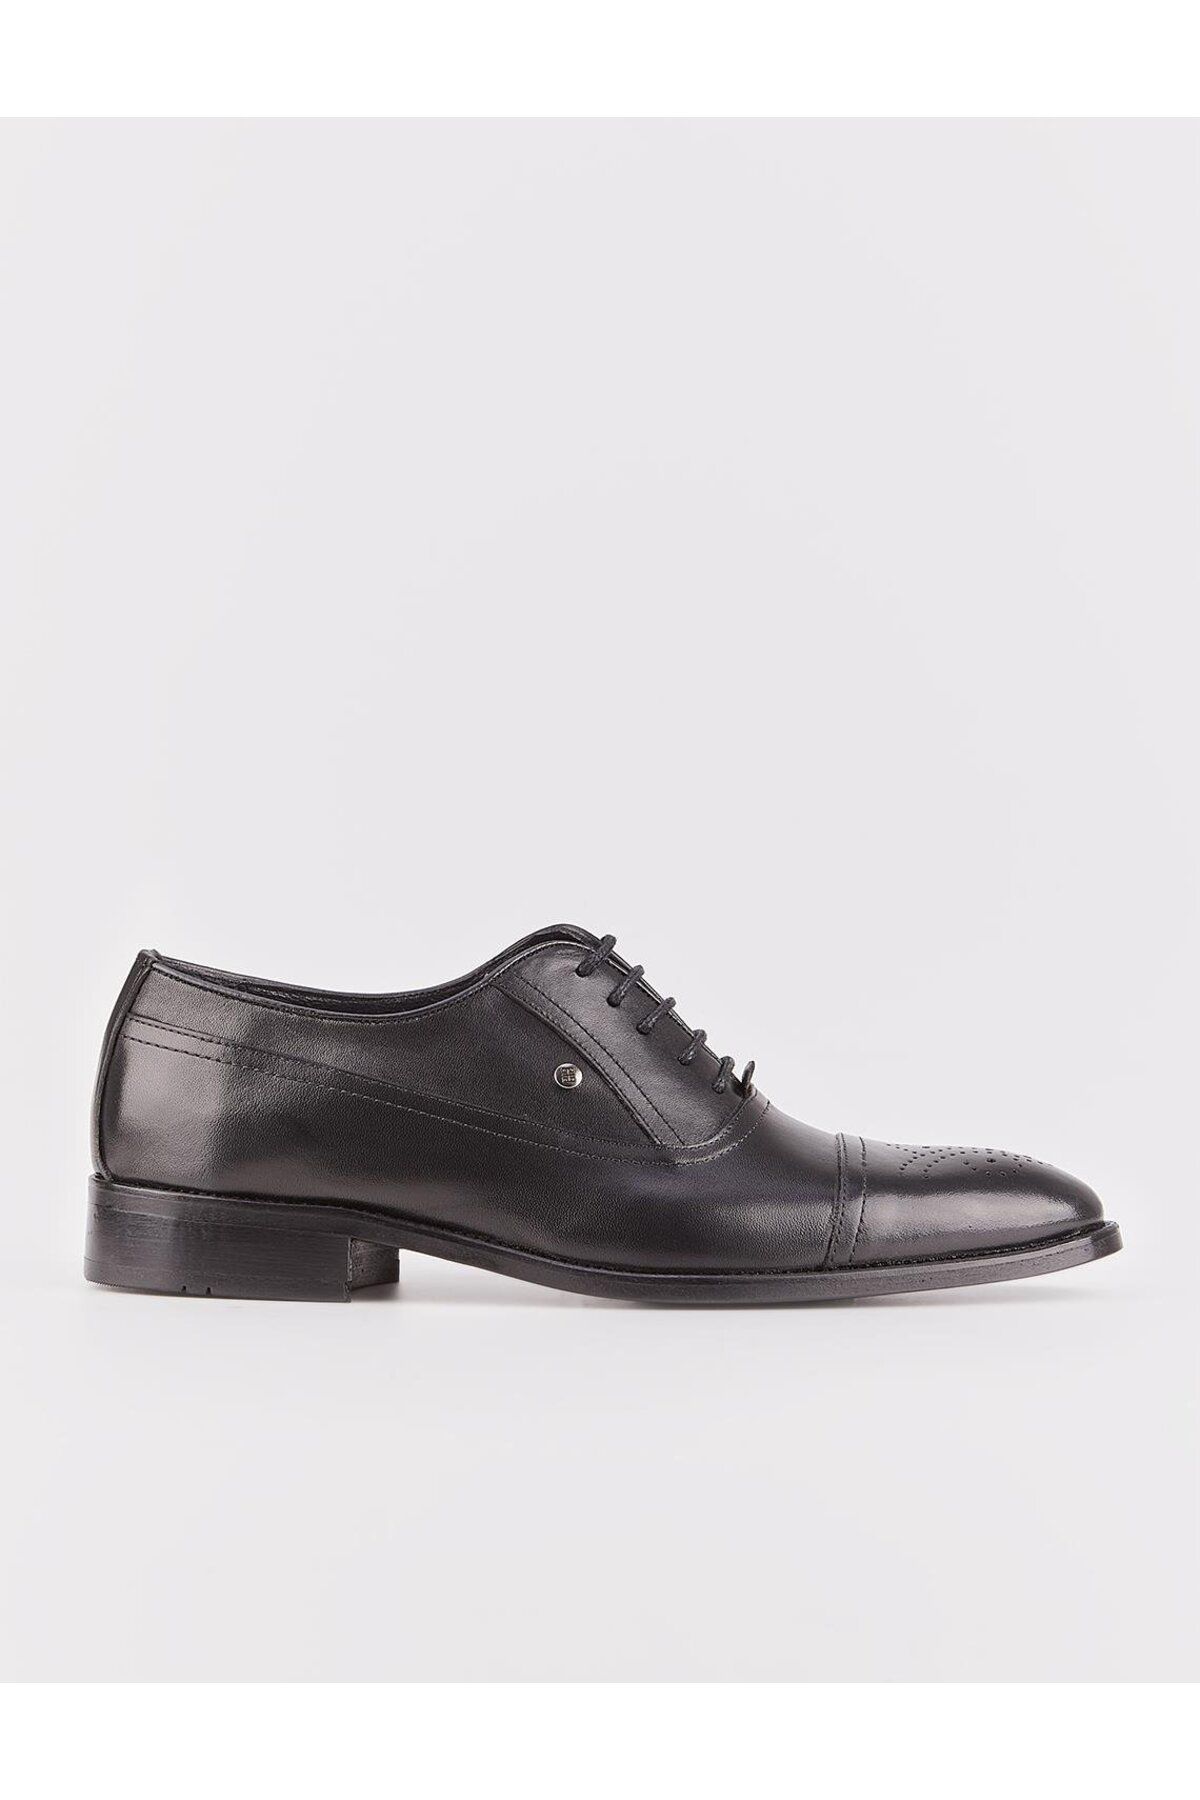 Cabani Hakiki Deri Erkek Klasik Siyah Bağcıklı Ayakkabı